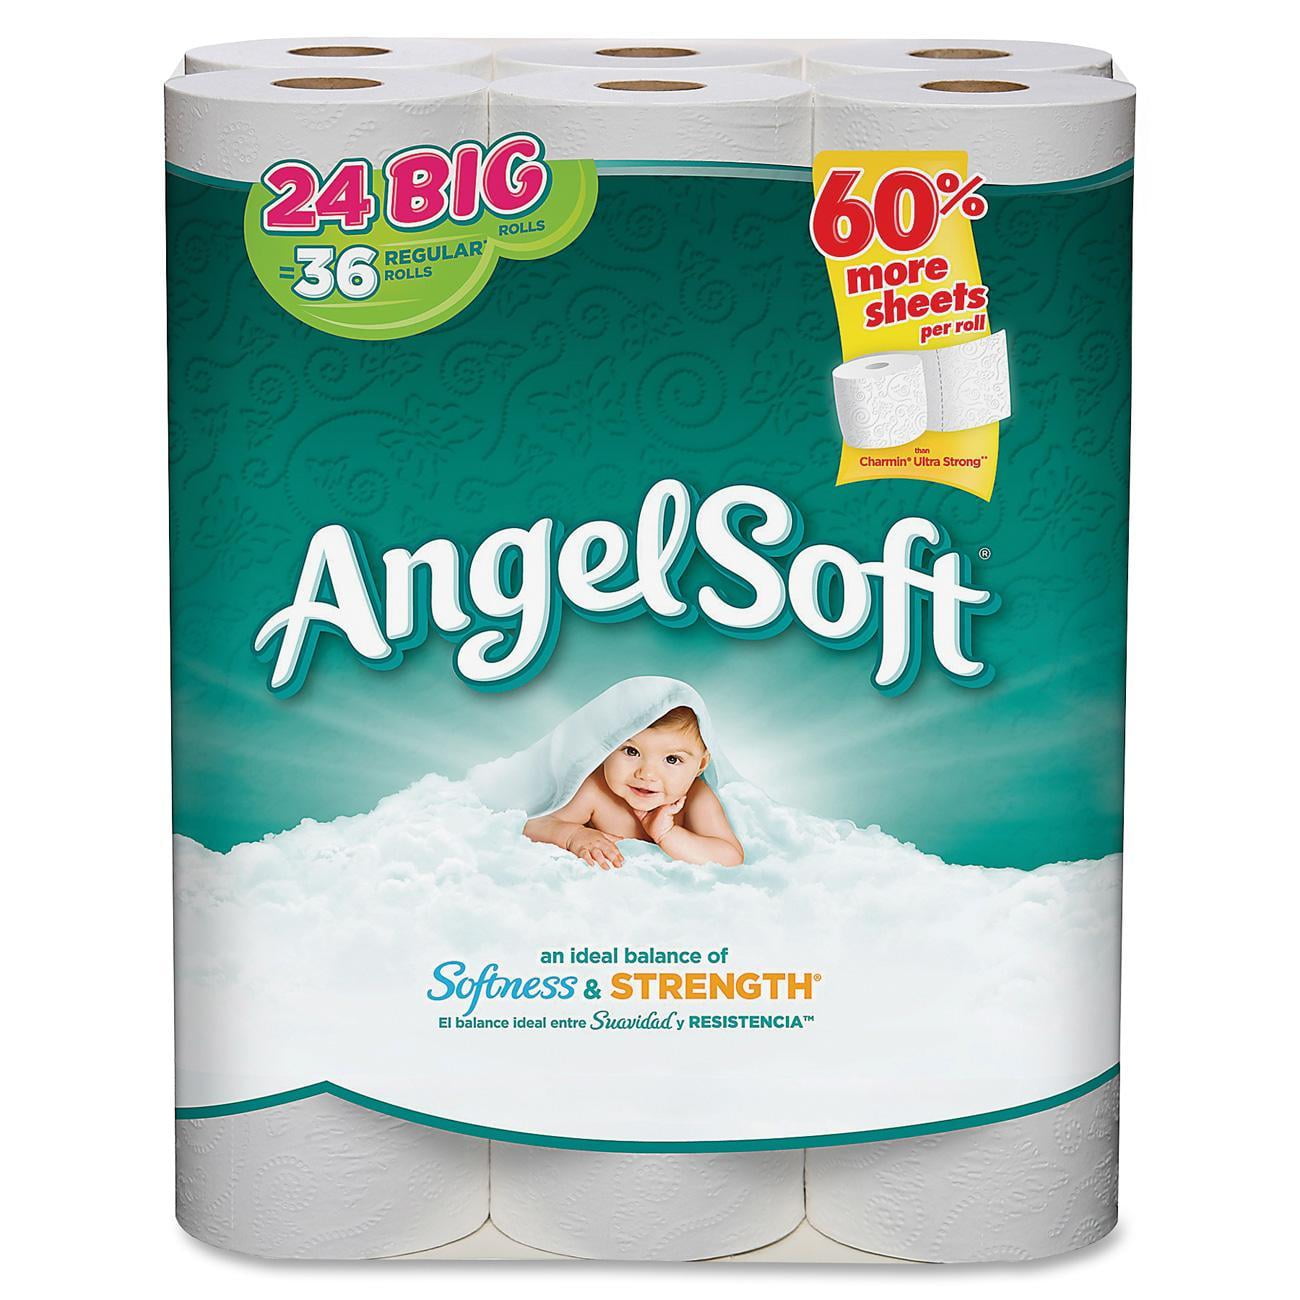 Angel Soft Premium Toilet Paper, 24 Big Rolls - Walmart.com - Walmart.com